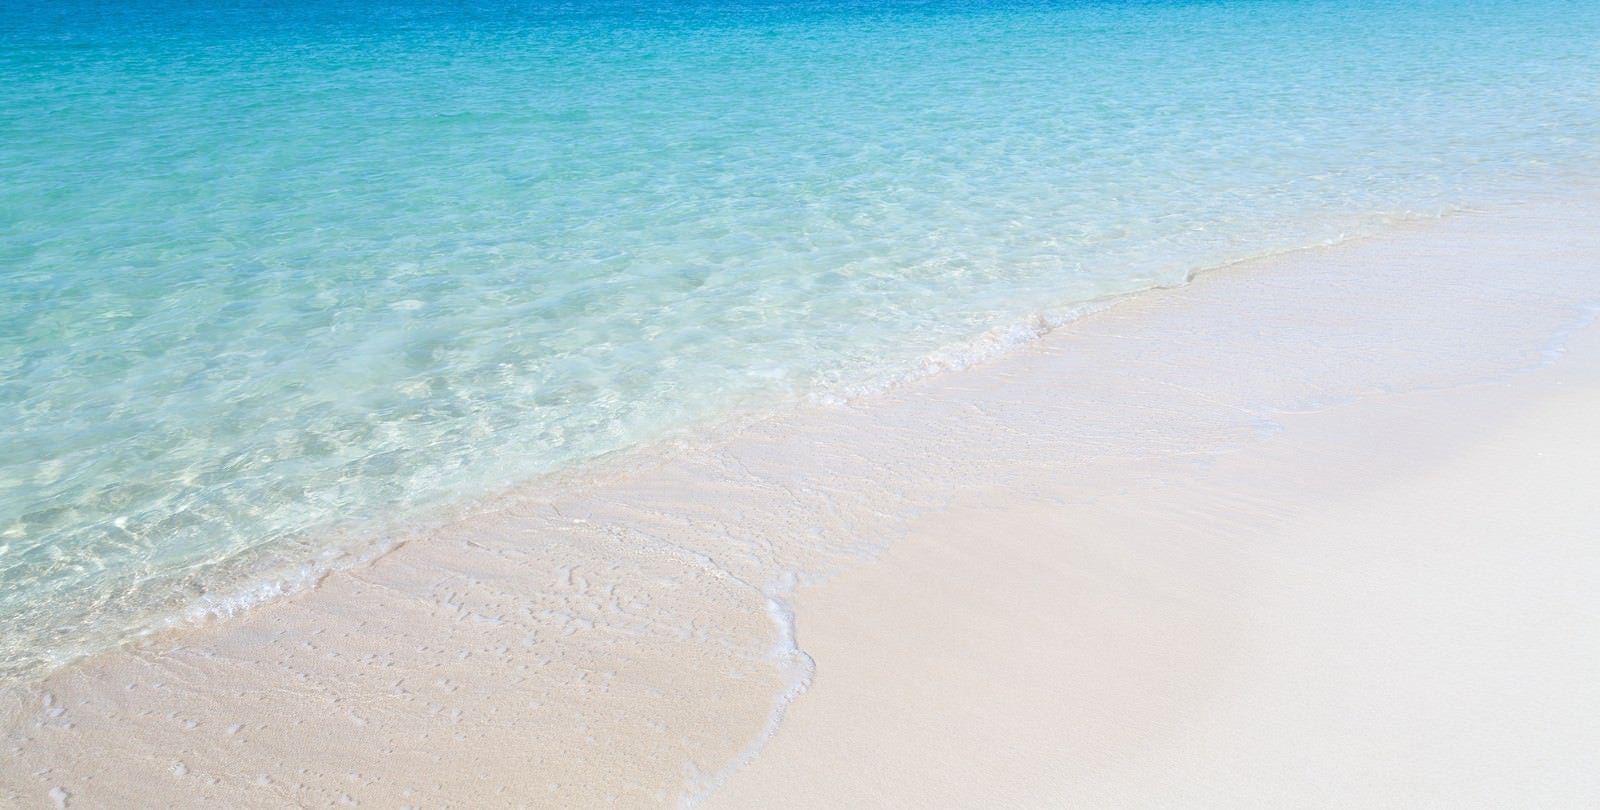 「透明度の高い宮古島の前浜ビーチの海」の写真